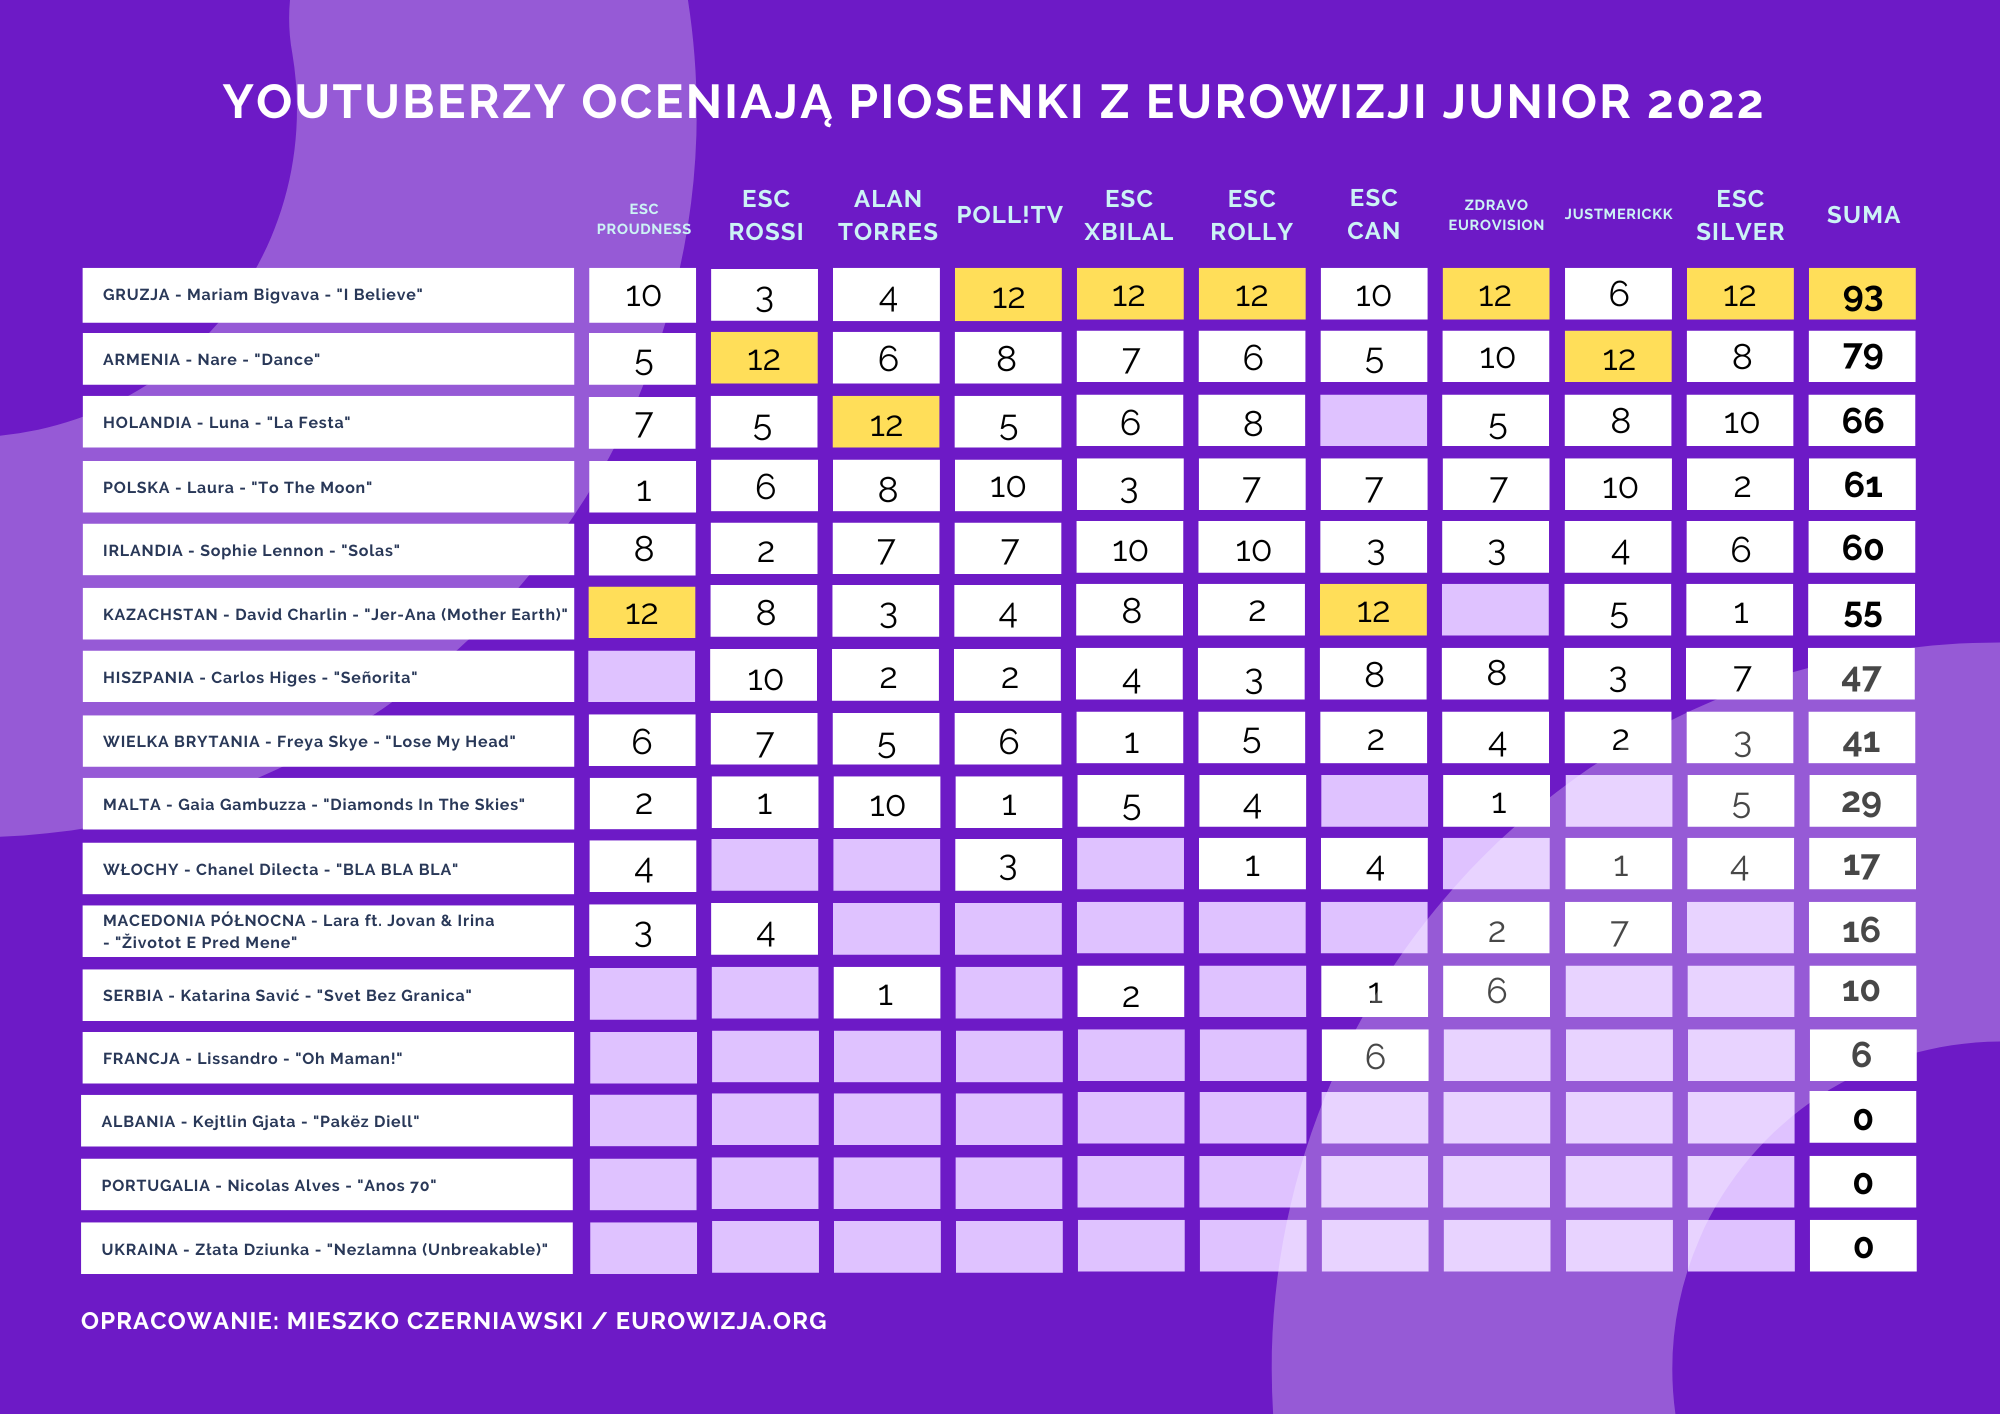 Eurowizja Junior 2022, youtuberzy, ranking